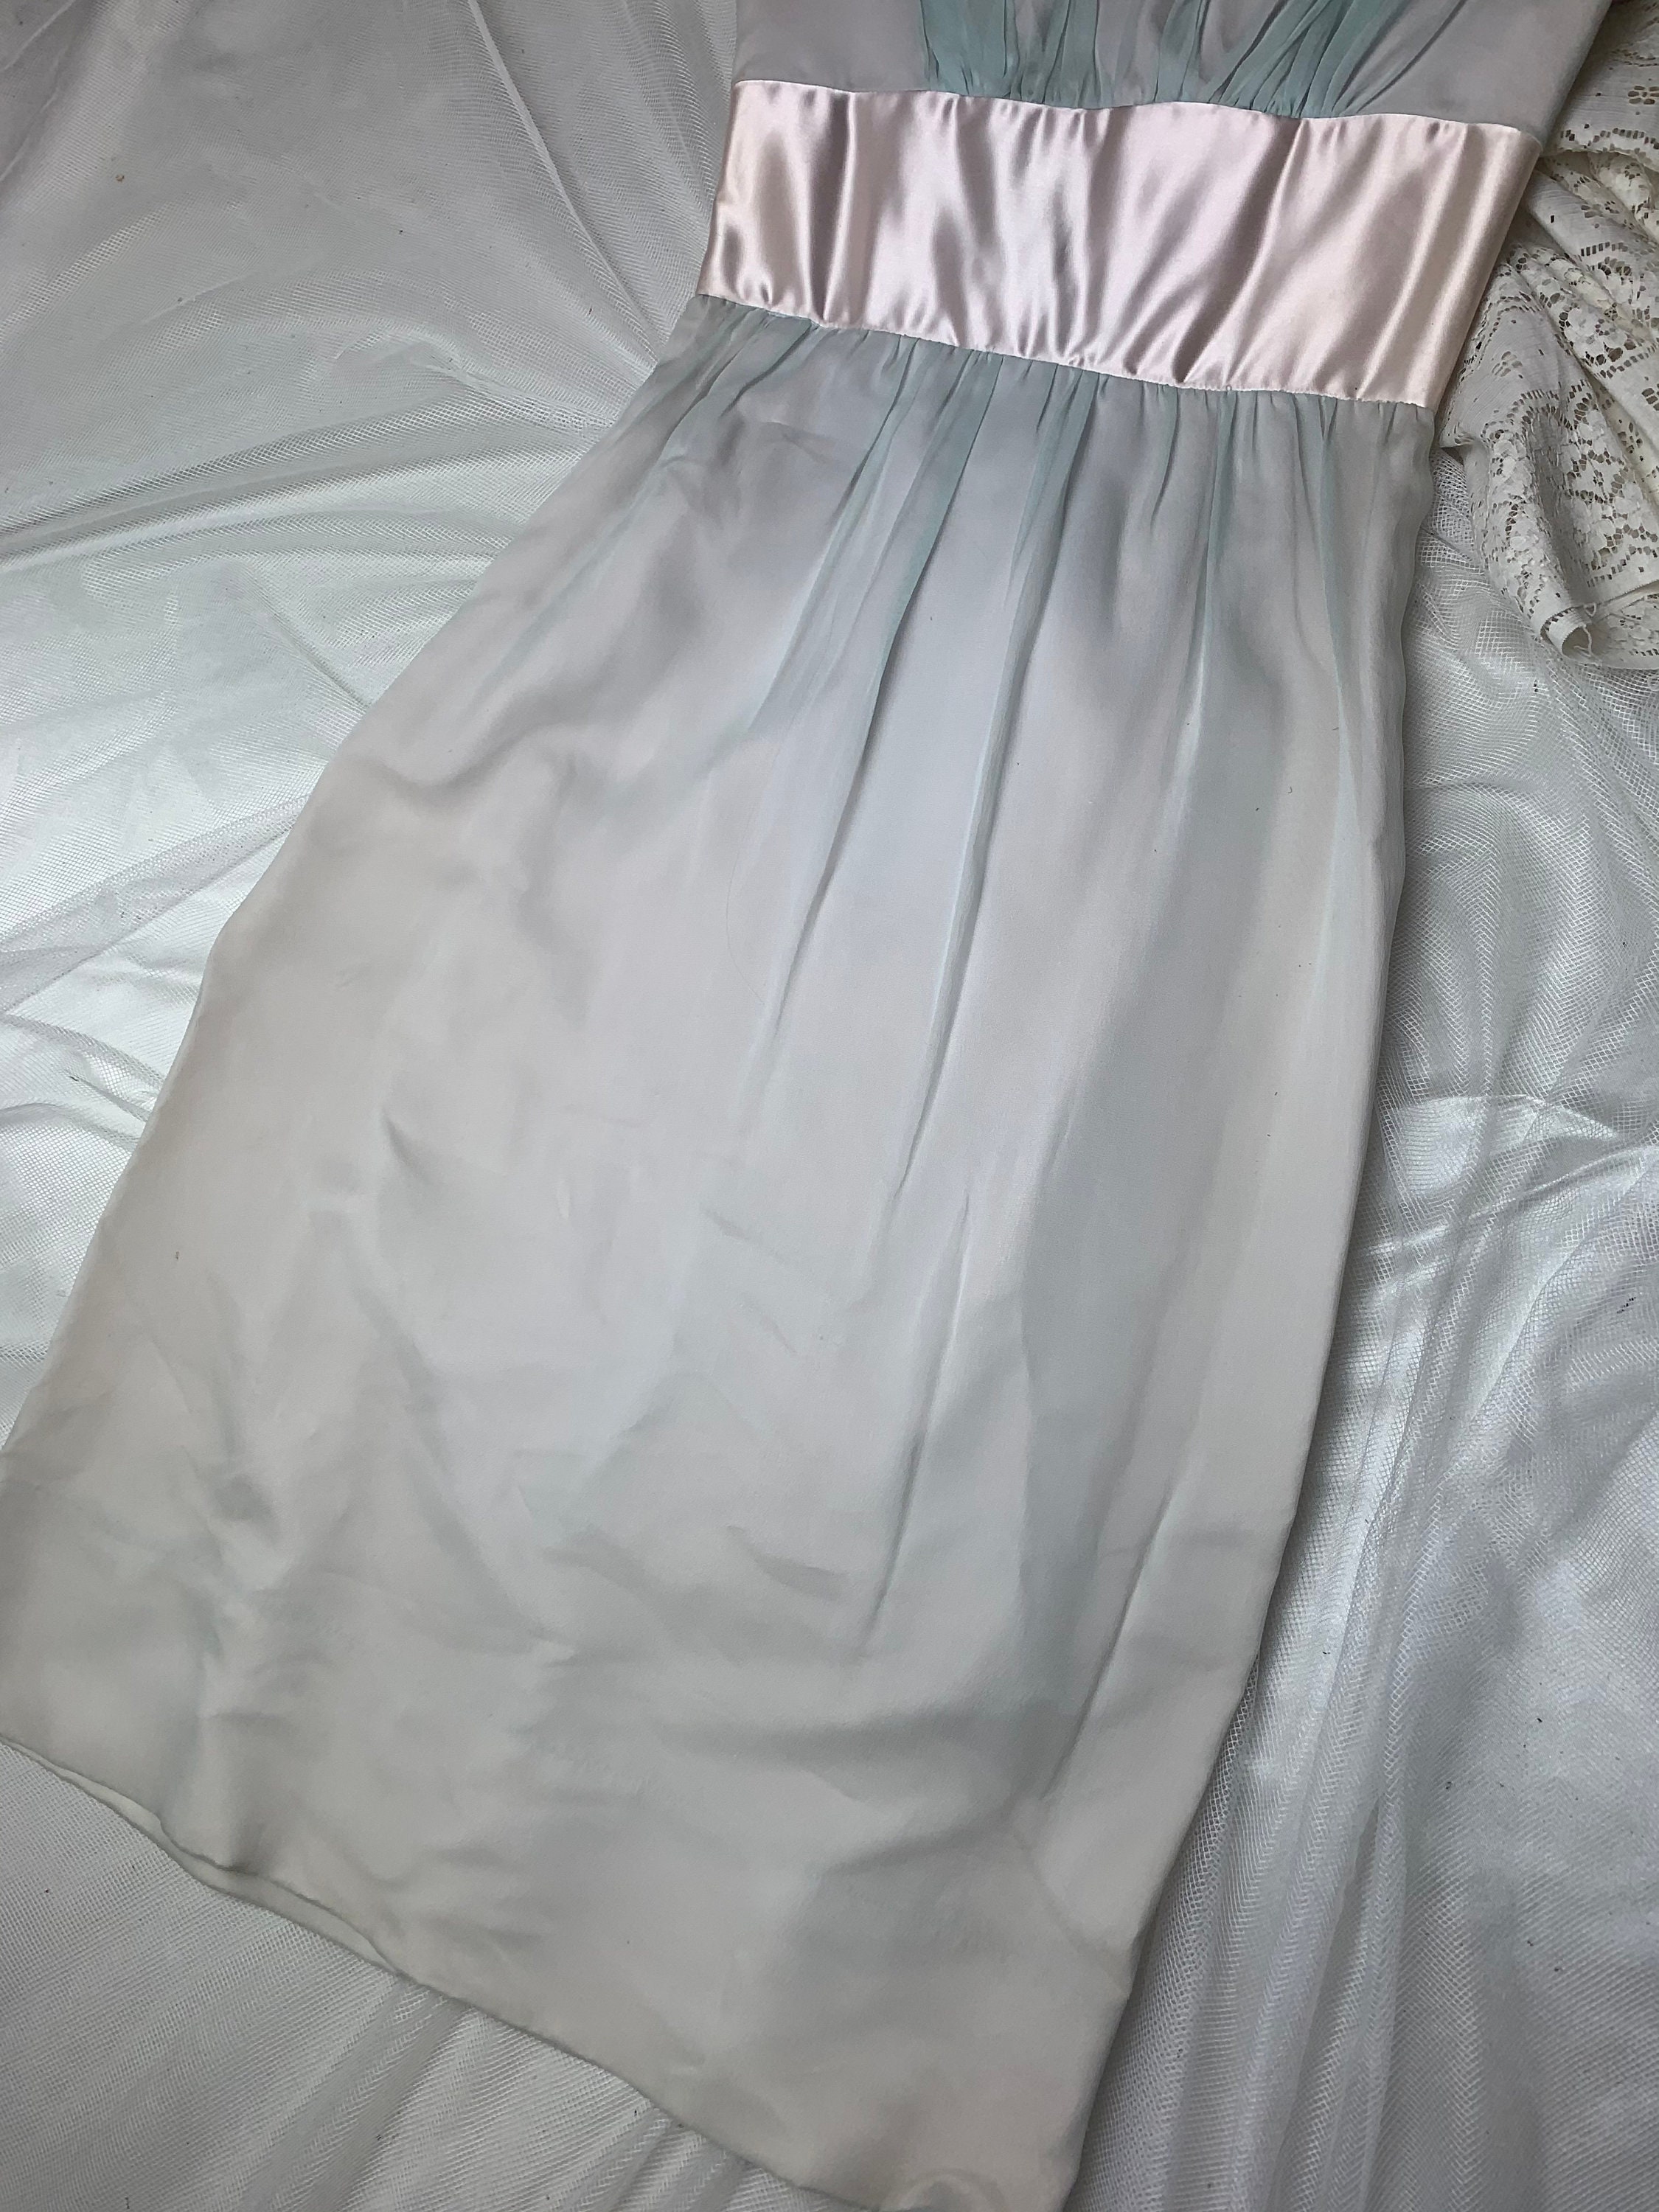 Vintage 1950s Harry Keiser Pencil Skirt Prom Dress Sheer Blue | Etsy